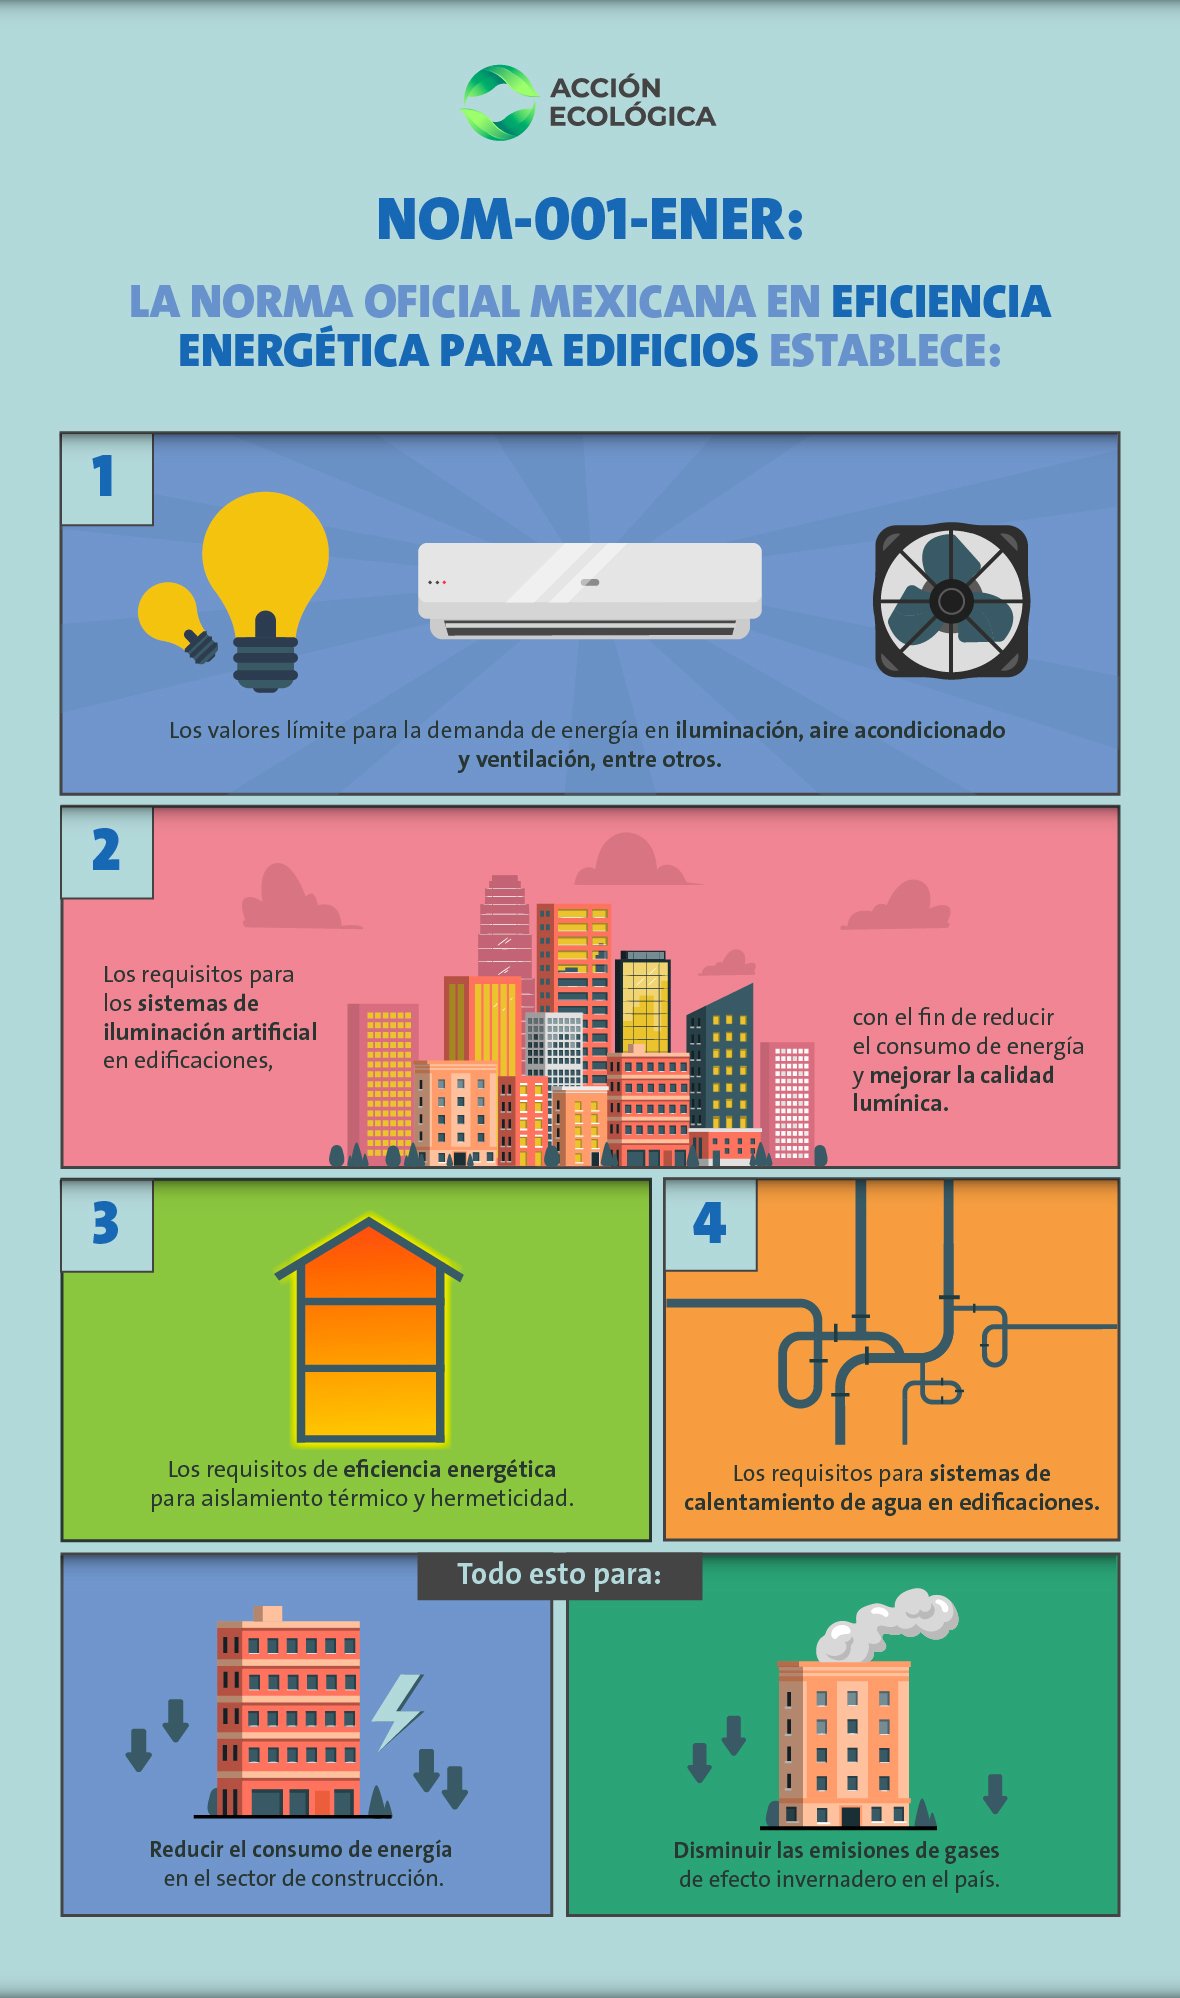 NOM 001 ENER: Norma oficial mexicana en eficiencia energética para edificios.